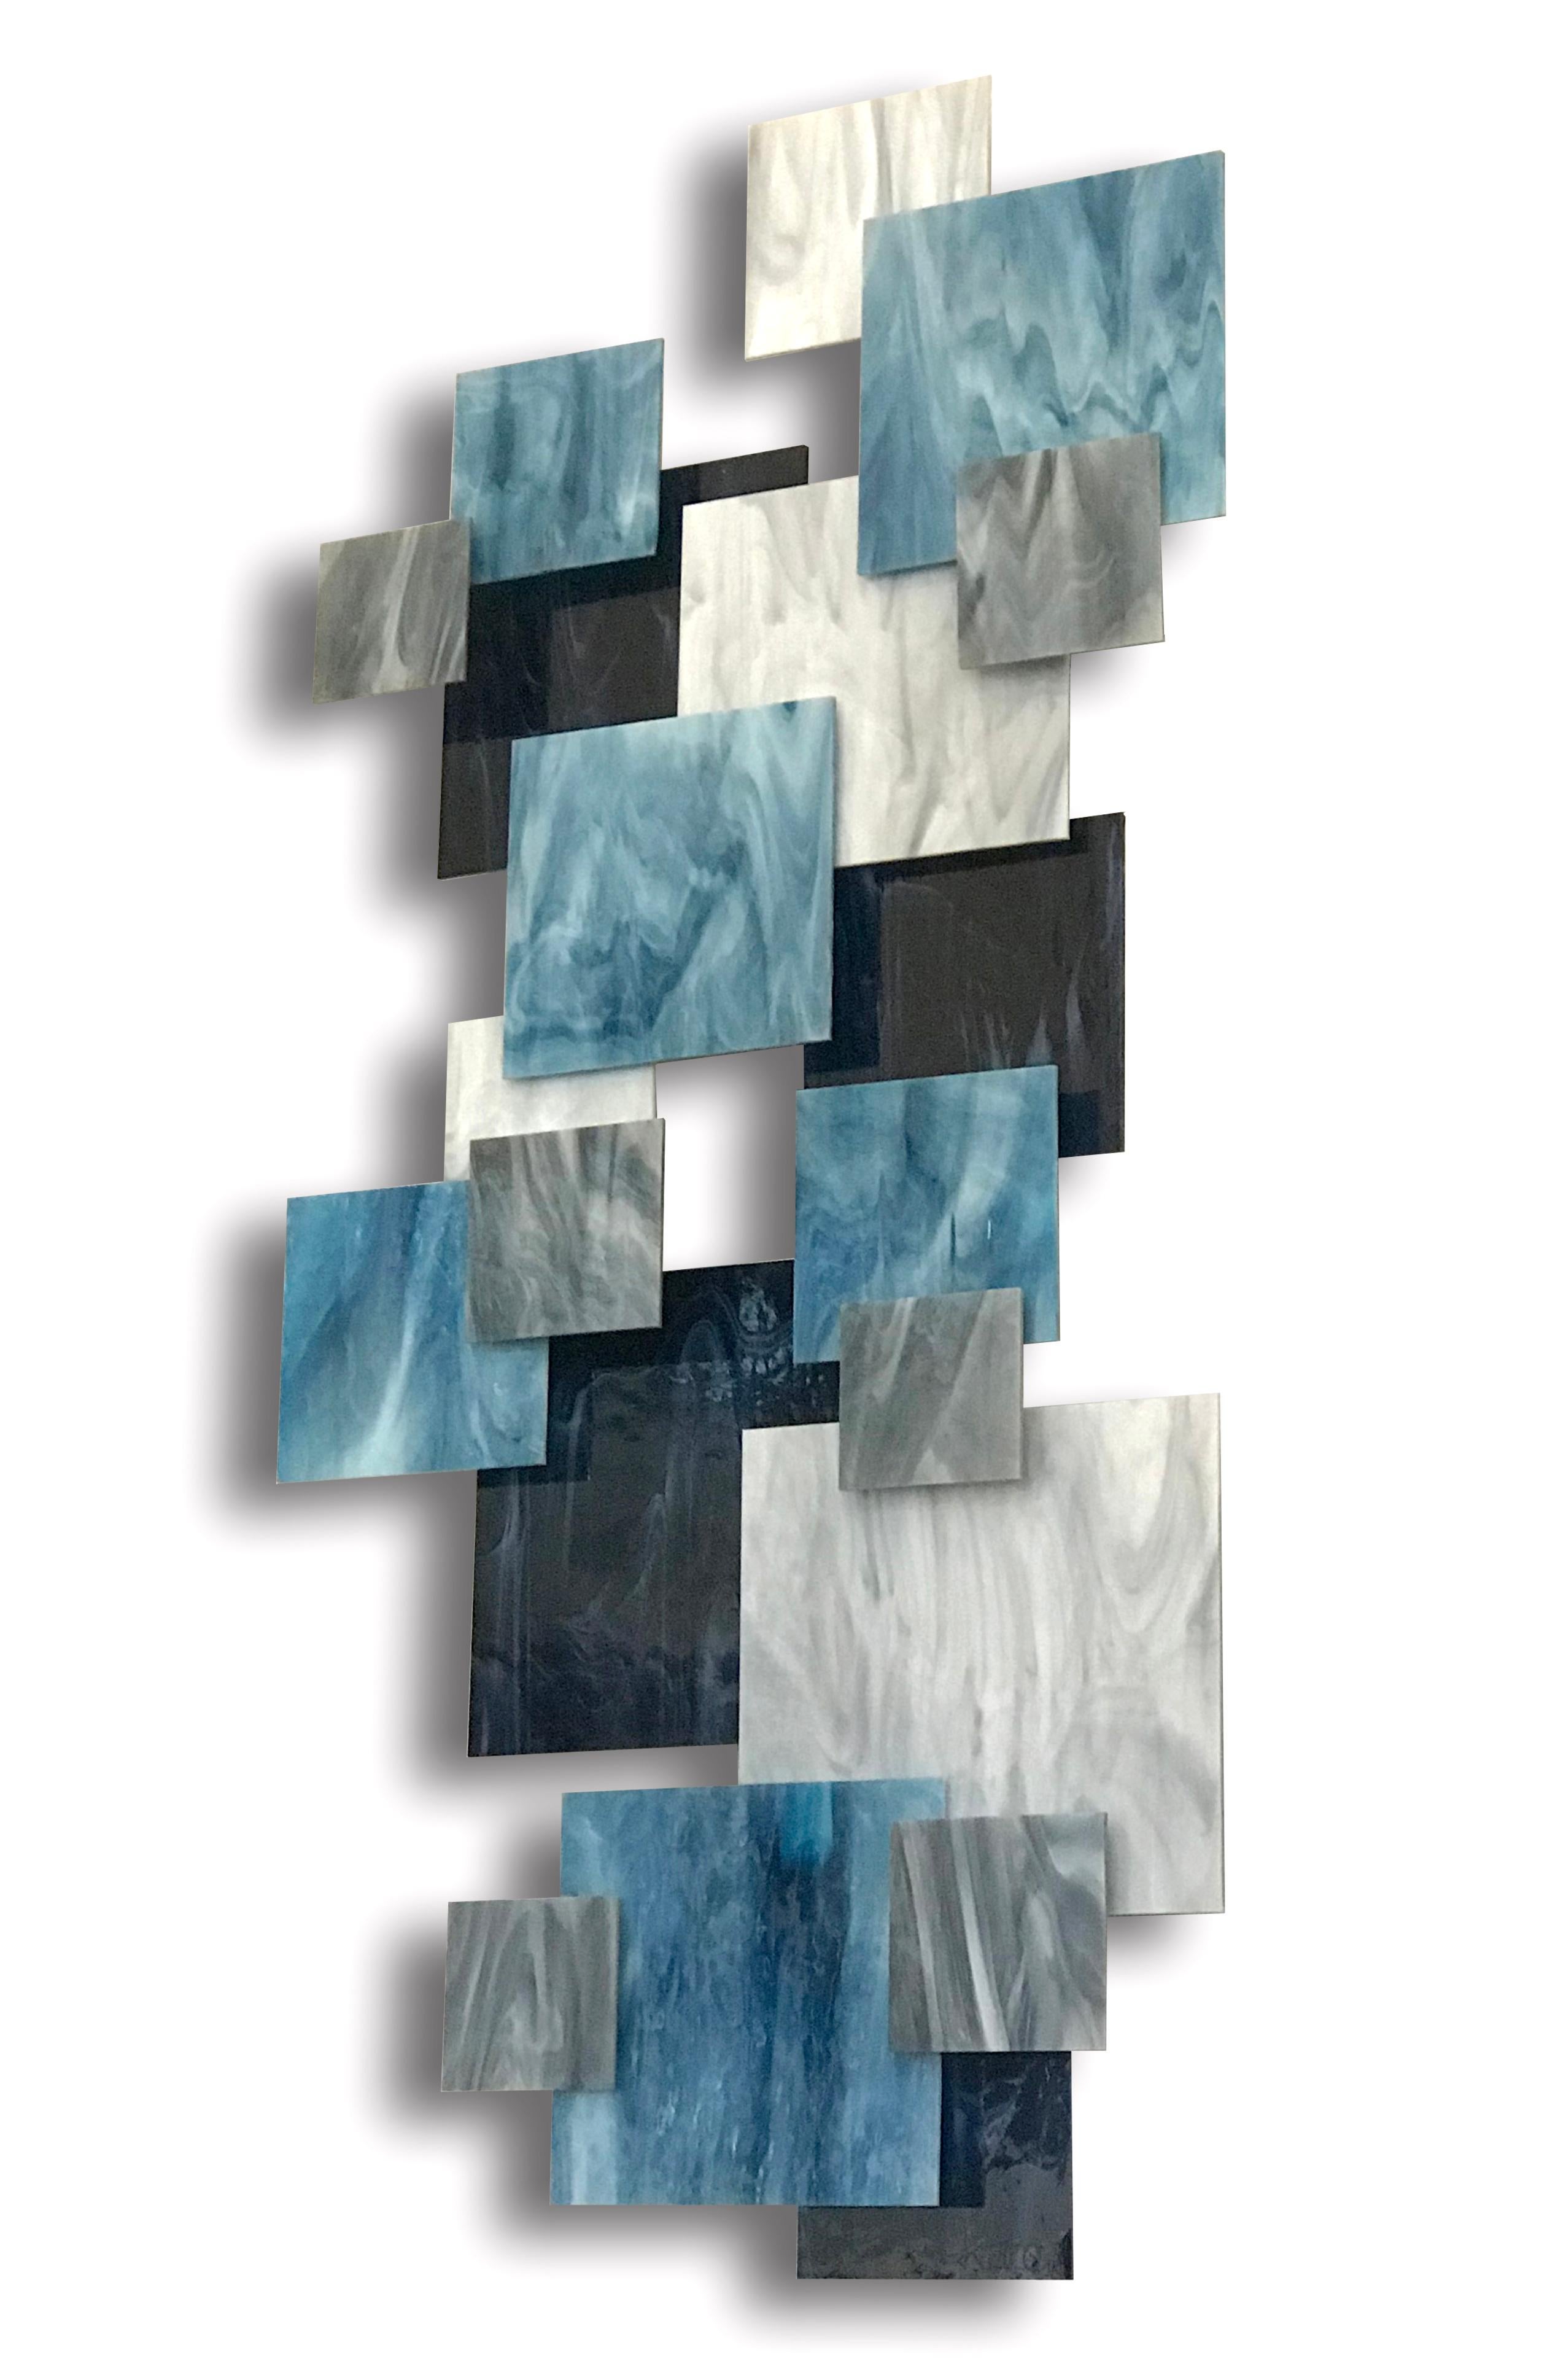 Einzelne Glasstücke werden von Hand geschnitten und über einen geschweißten Metallrahmen auf verschiedenen Ebenen angebracht, um eine dynamische und harmonische 3D-Komposition zu schaffen. Jedes Stück wird von dem Künstler Karo Martirosyan in seinem